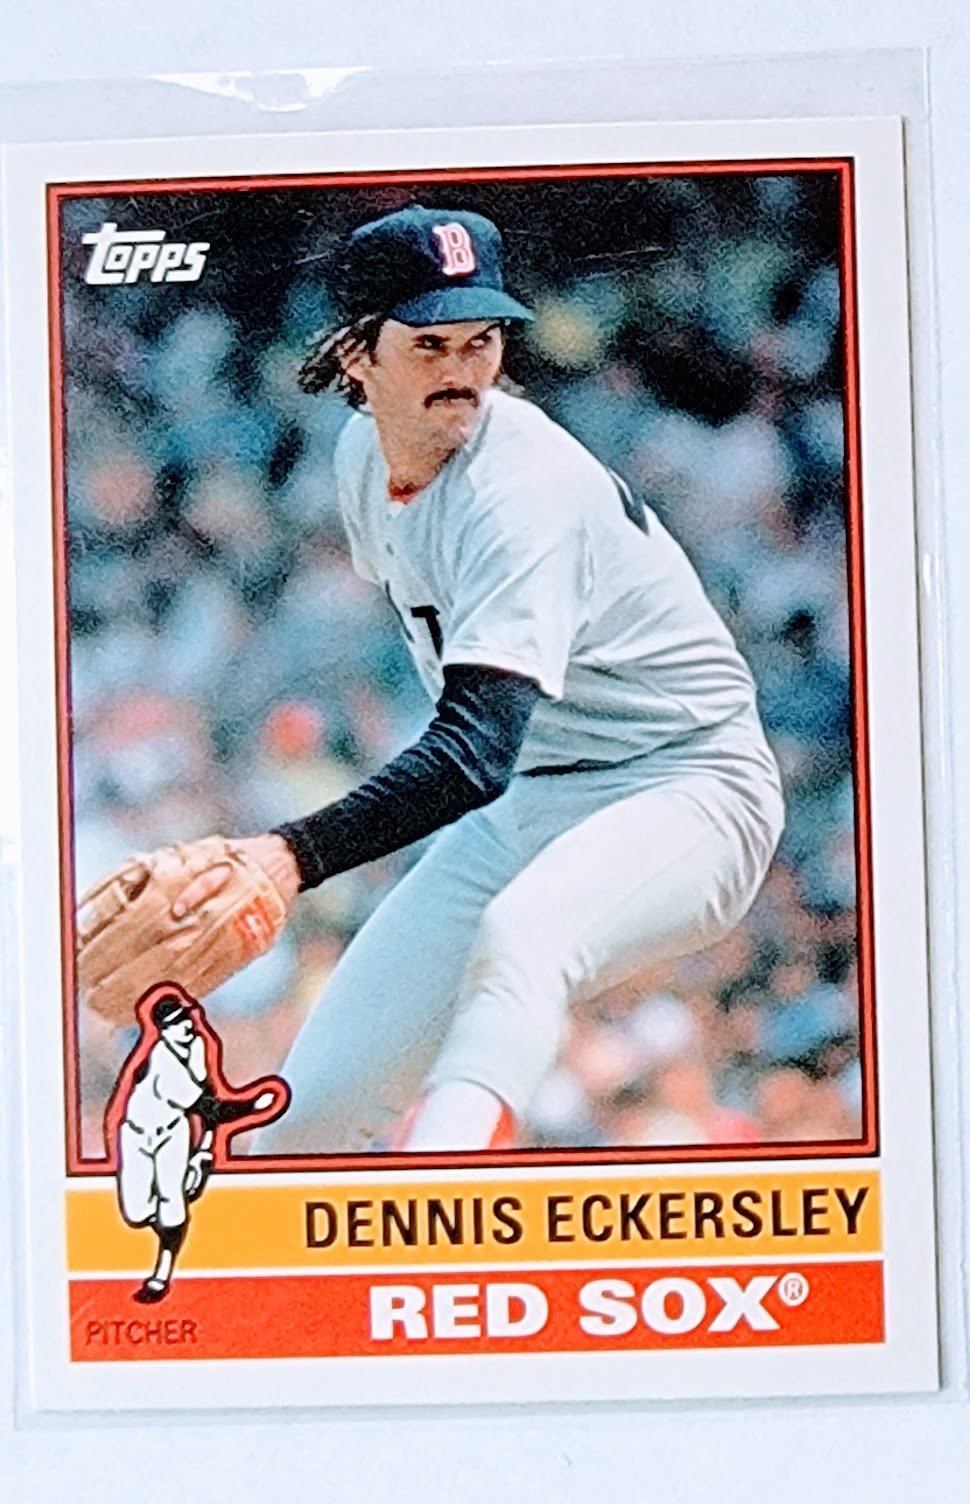 2015 Topps Archives Dennis Eckersley Baseball Trading Card TPTV